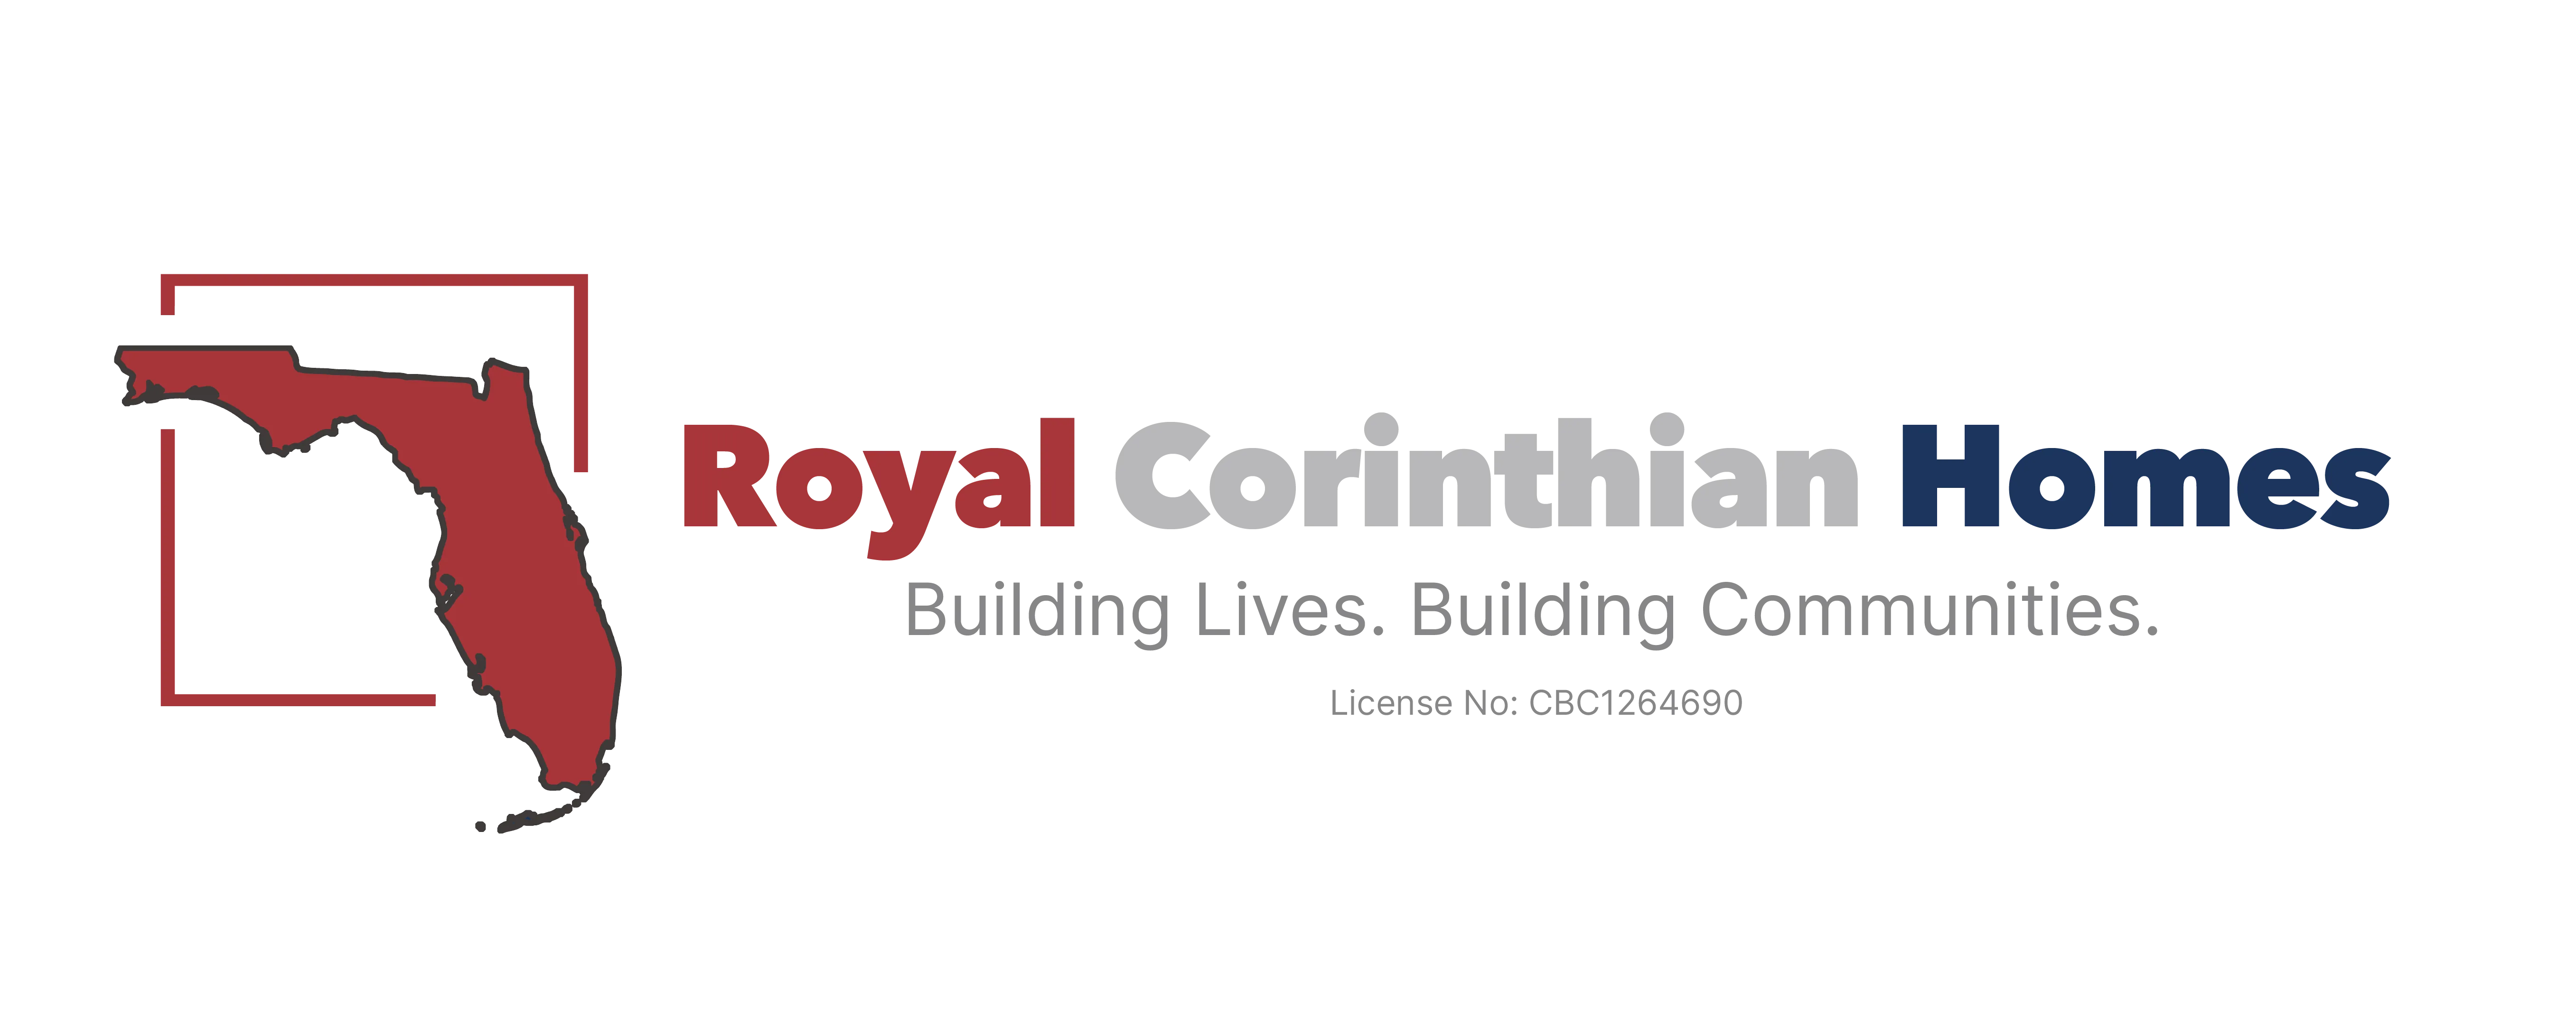 Royal Corinthian Homes Logo